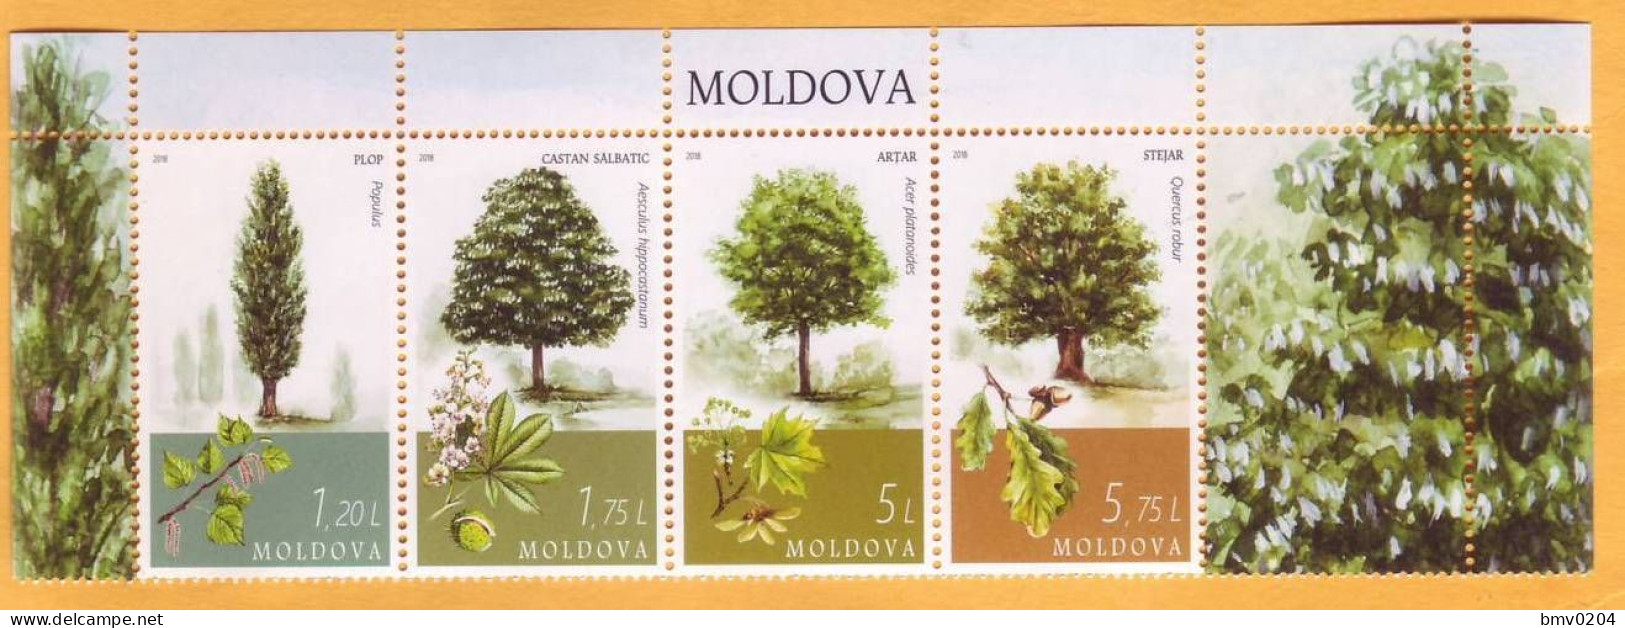 2018 Moldova Moldavie "The Main Tree Species In Moldova": Oak, Chestnut, Ash, Maple Mint. - Bäume